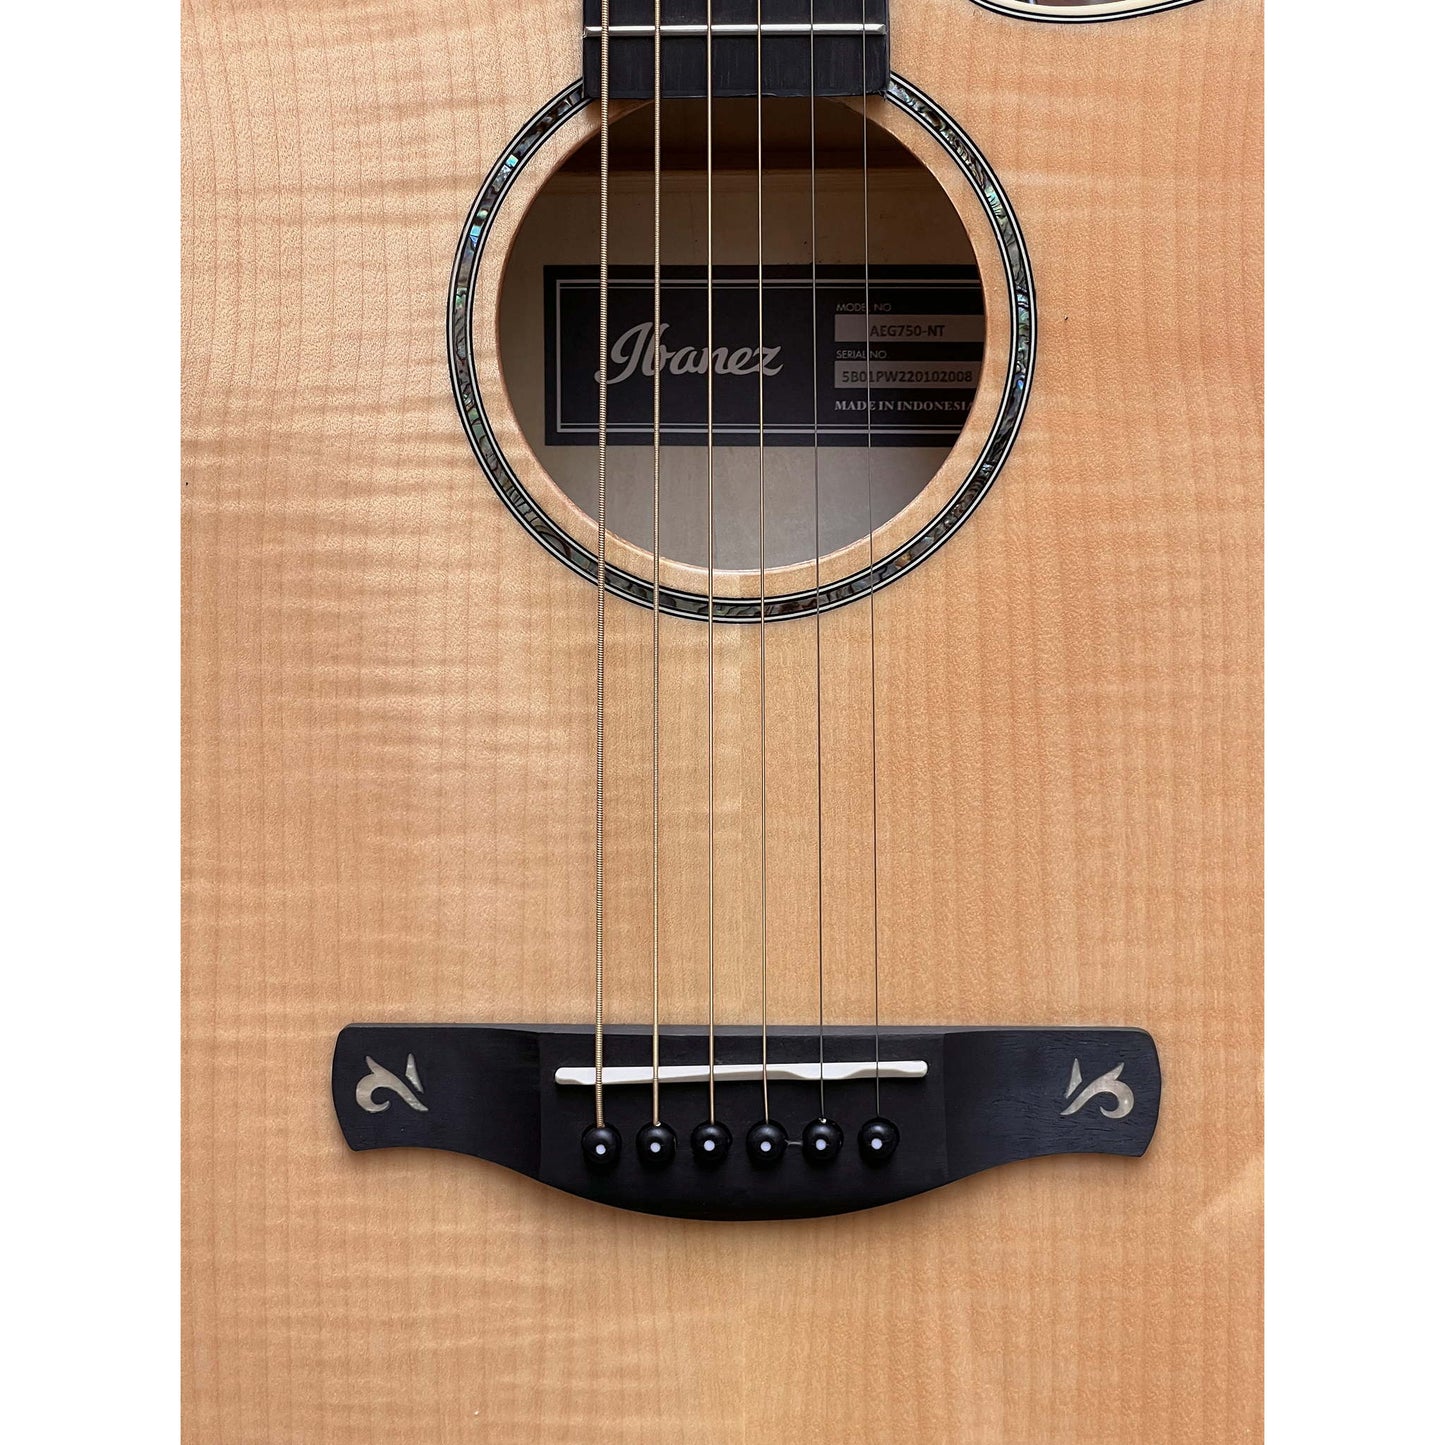 Ibanez AEG750 AEG Acoustic-Electric Guitar - Natural